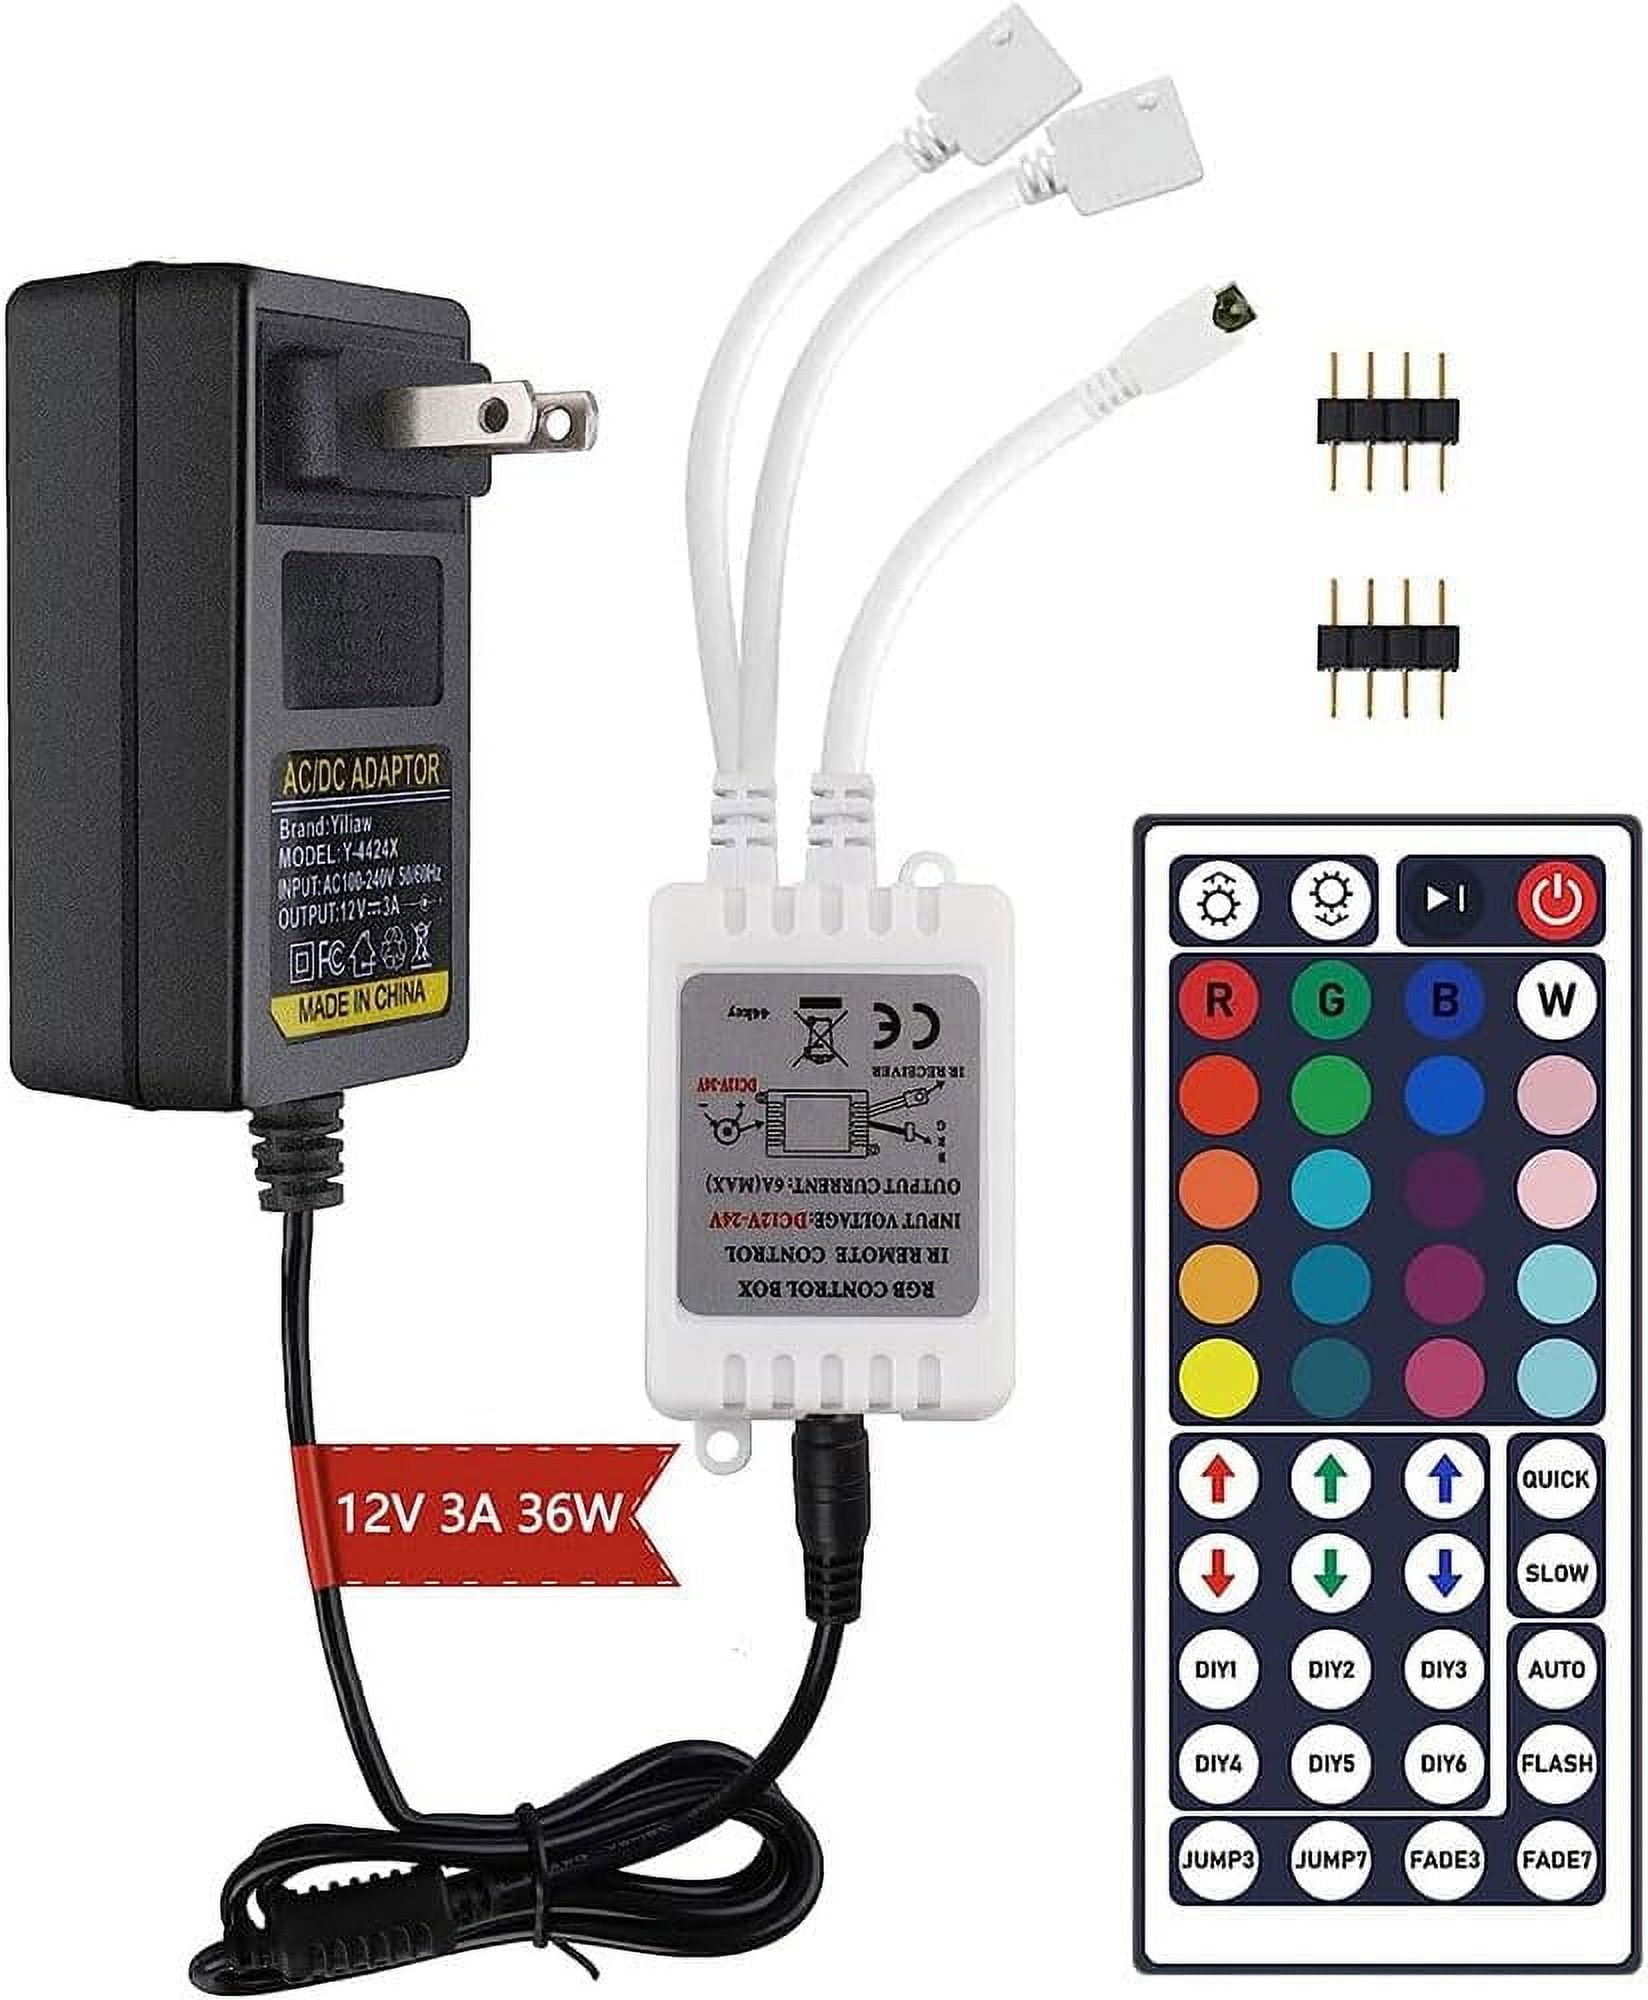 Yiliaw 44 Keys IR Remote Controller Kit - Includes Wireless